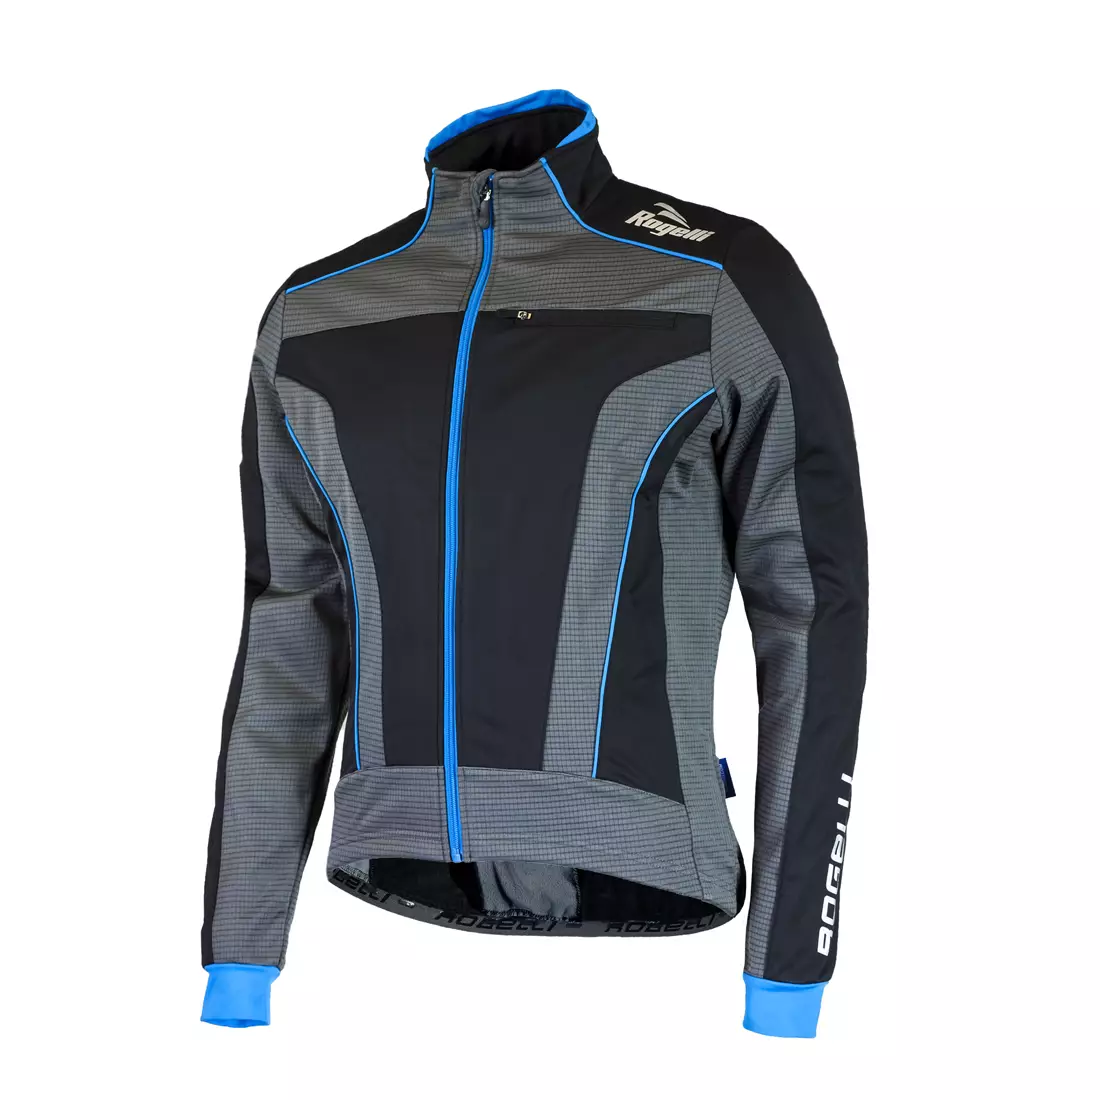 ROGELLI TRANI 3.0 téli kerékpáros kabát fekete-kék